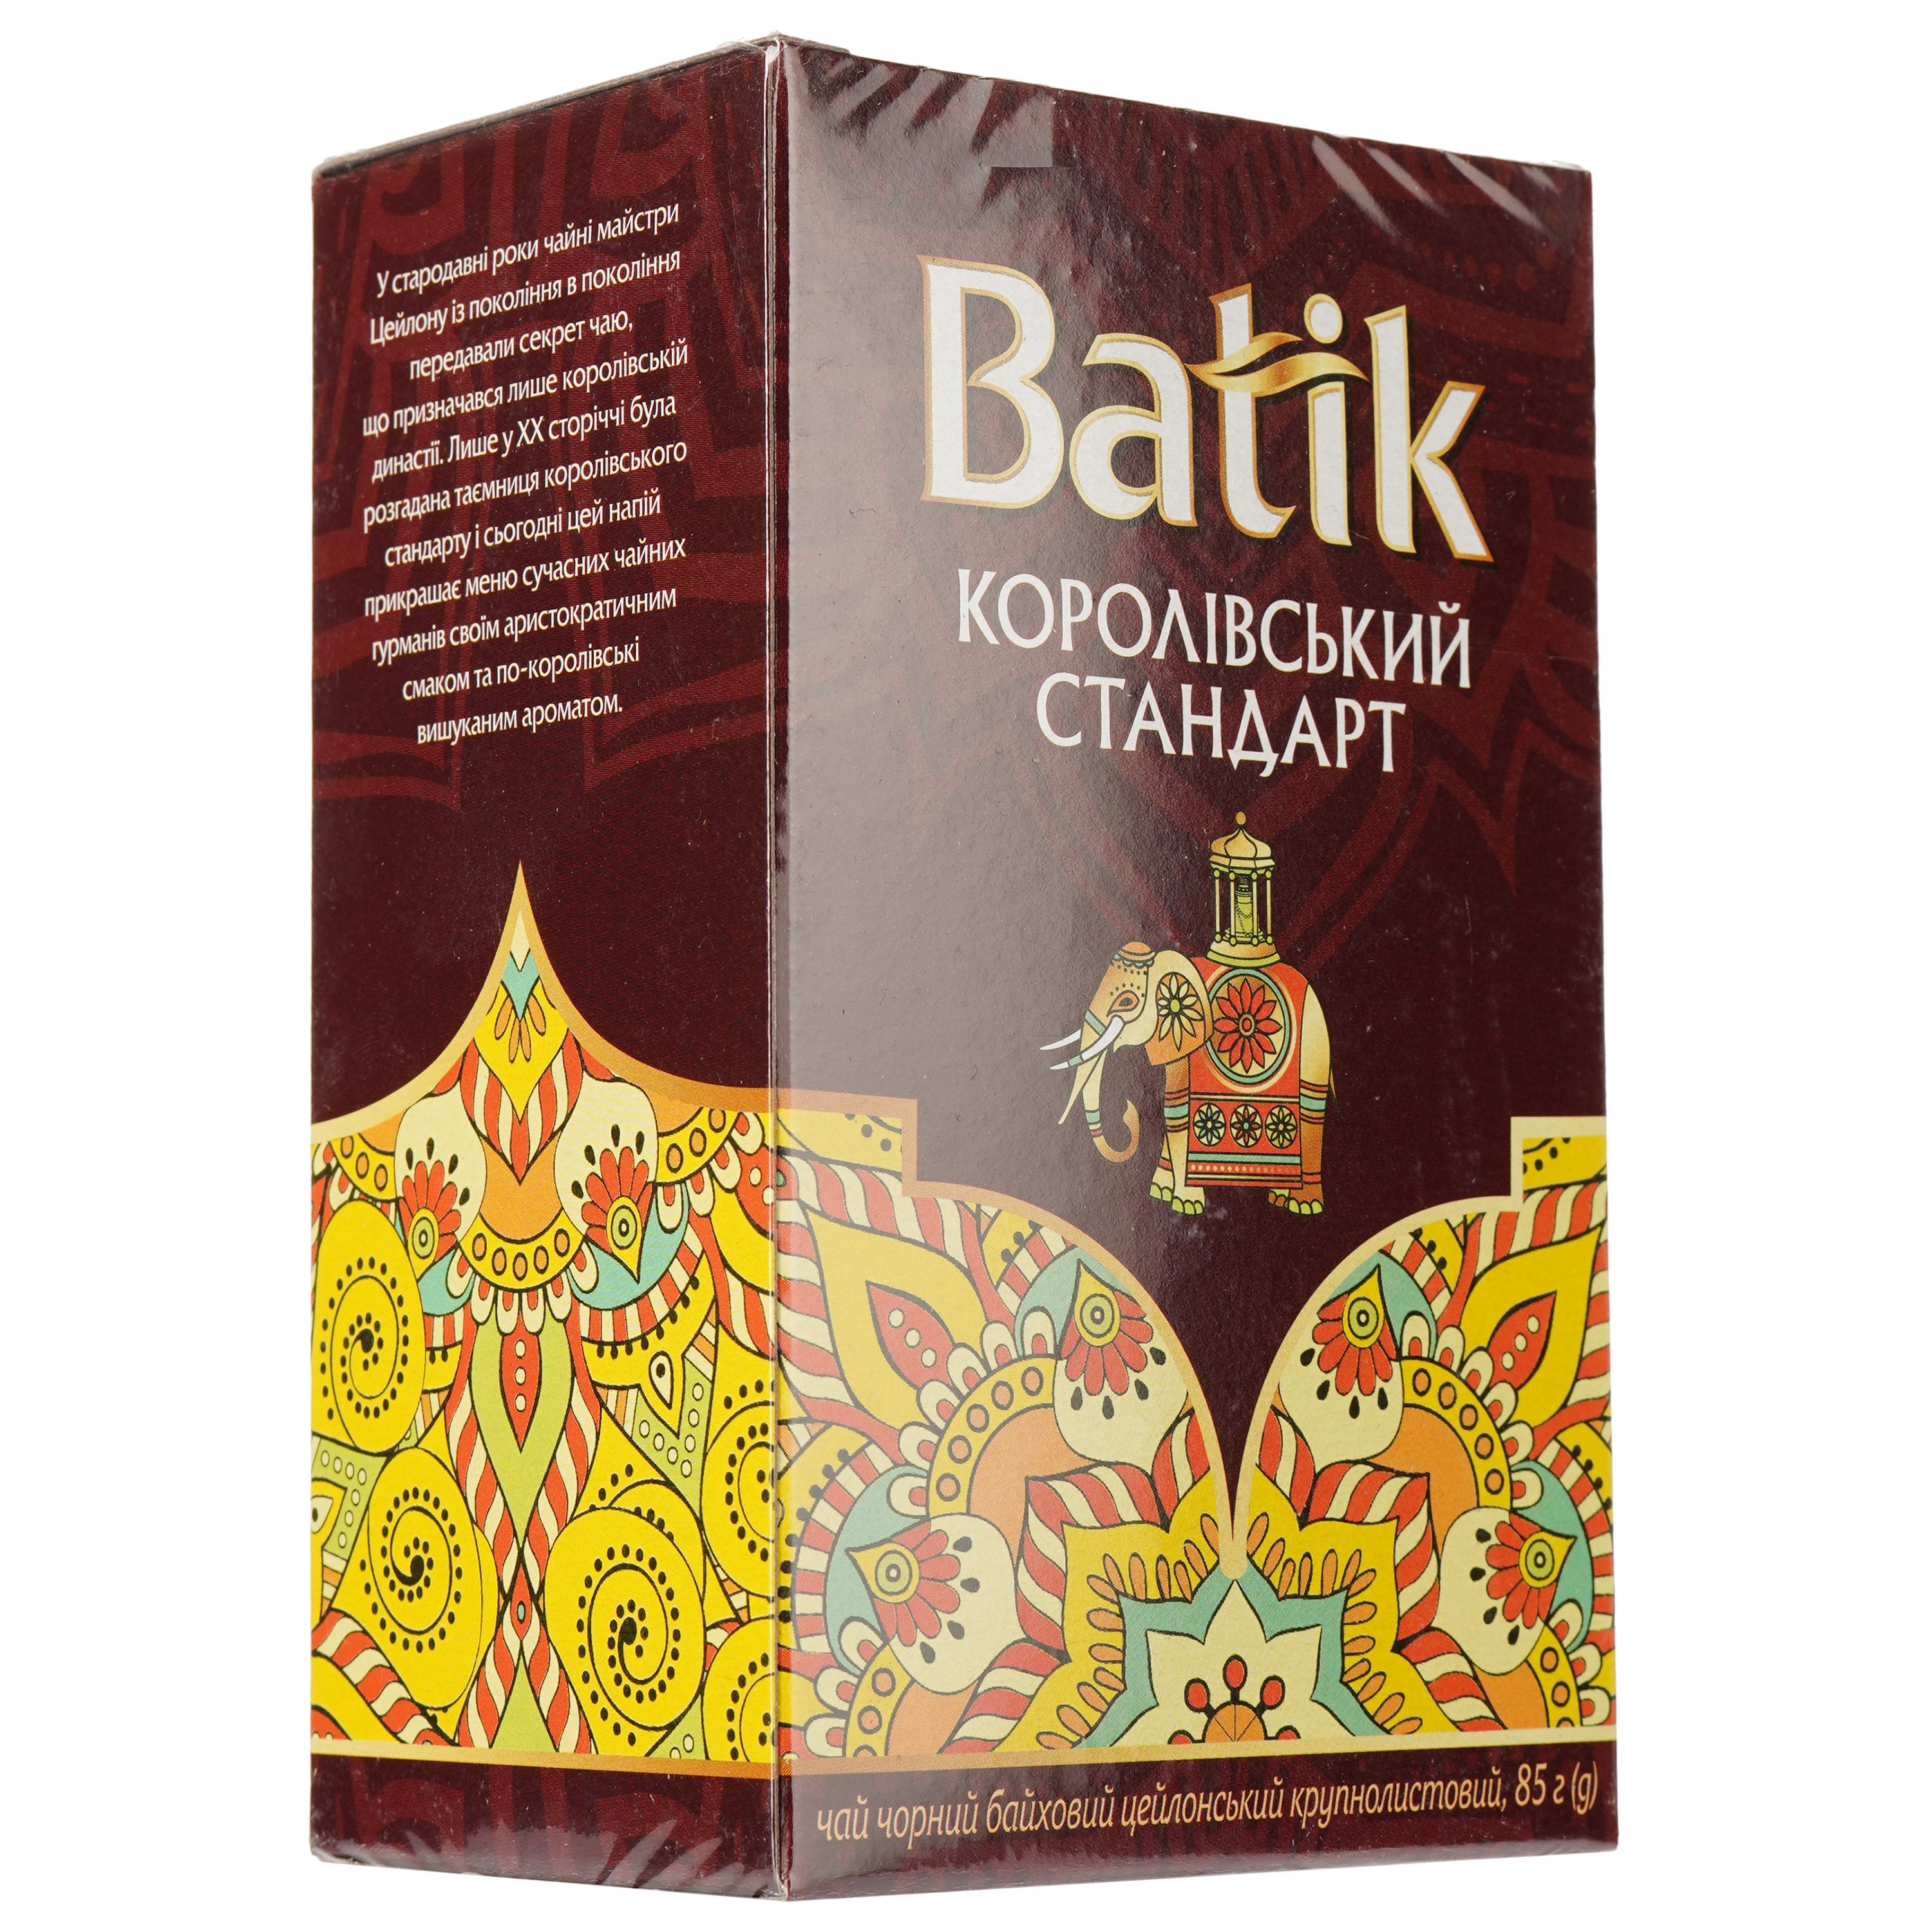 Чай чорний Batik Королівський стандарт байховий, цейлонський, крупнолистовий, 85 г - фото 2